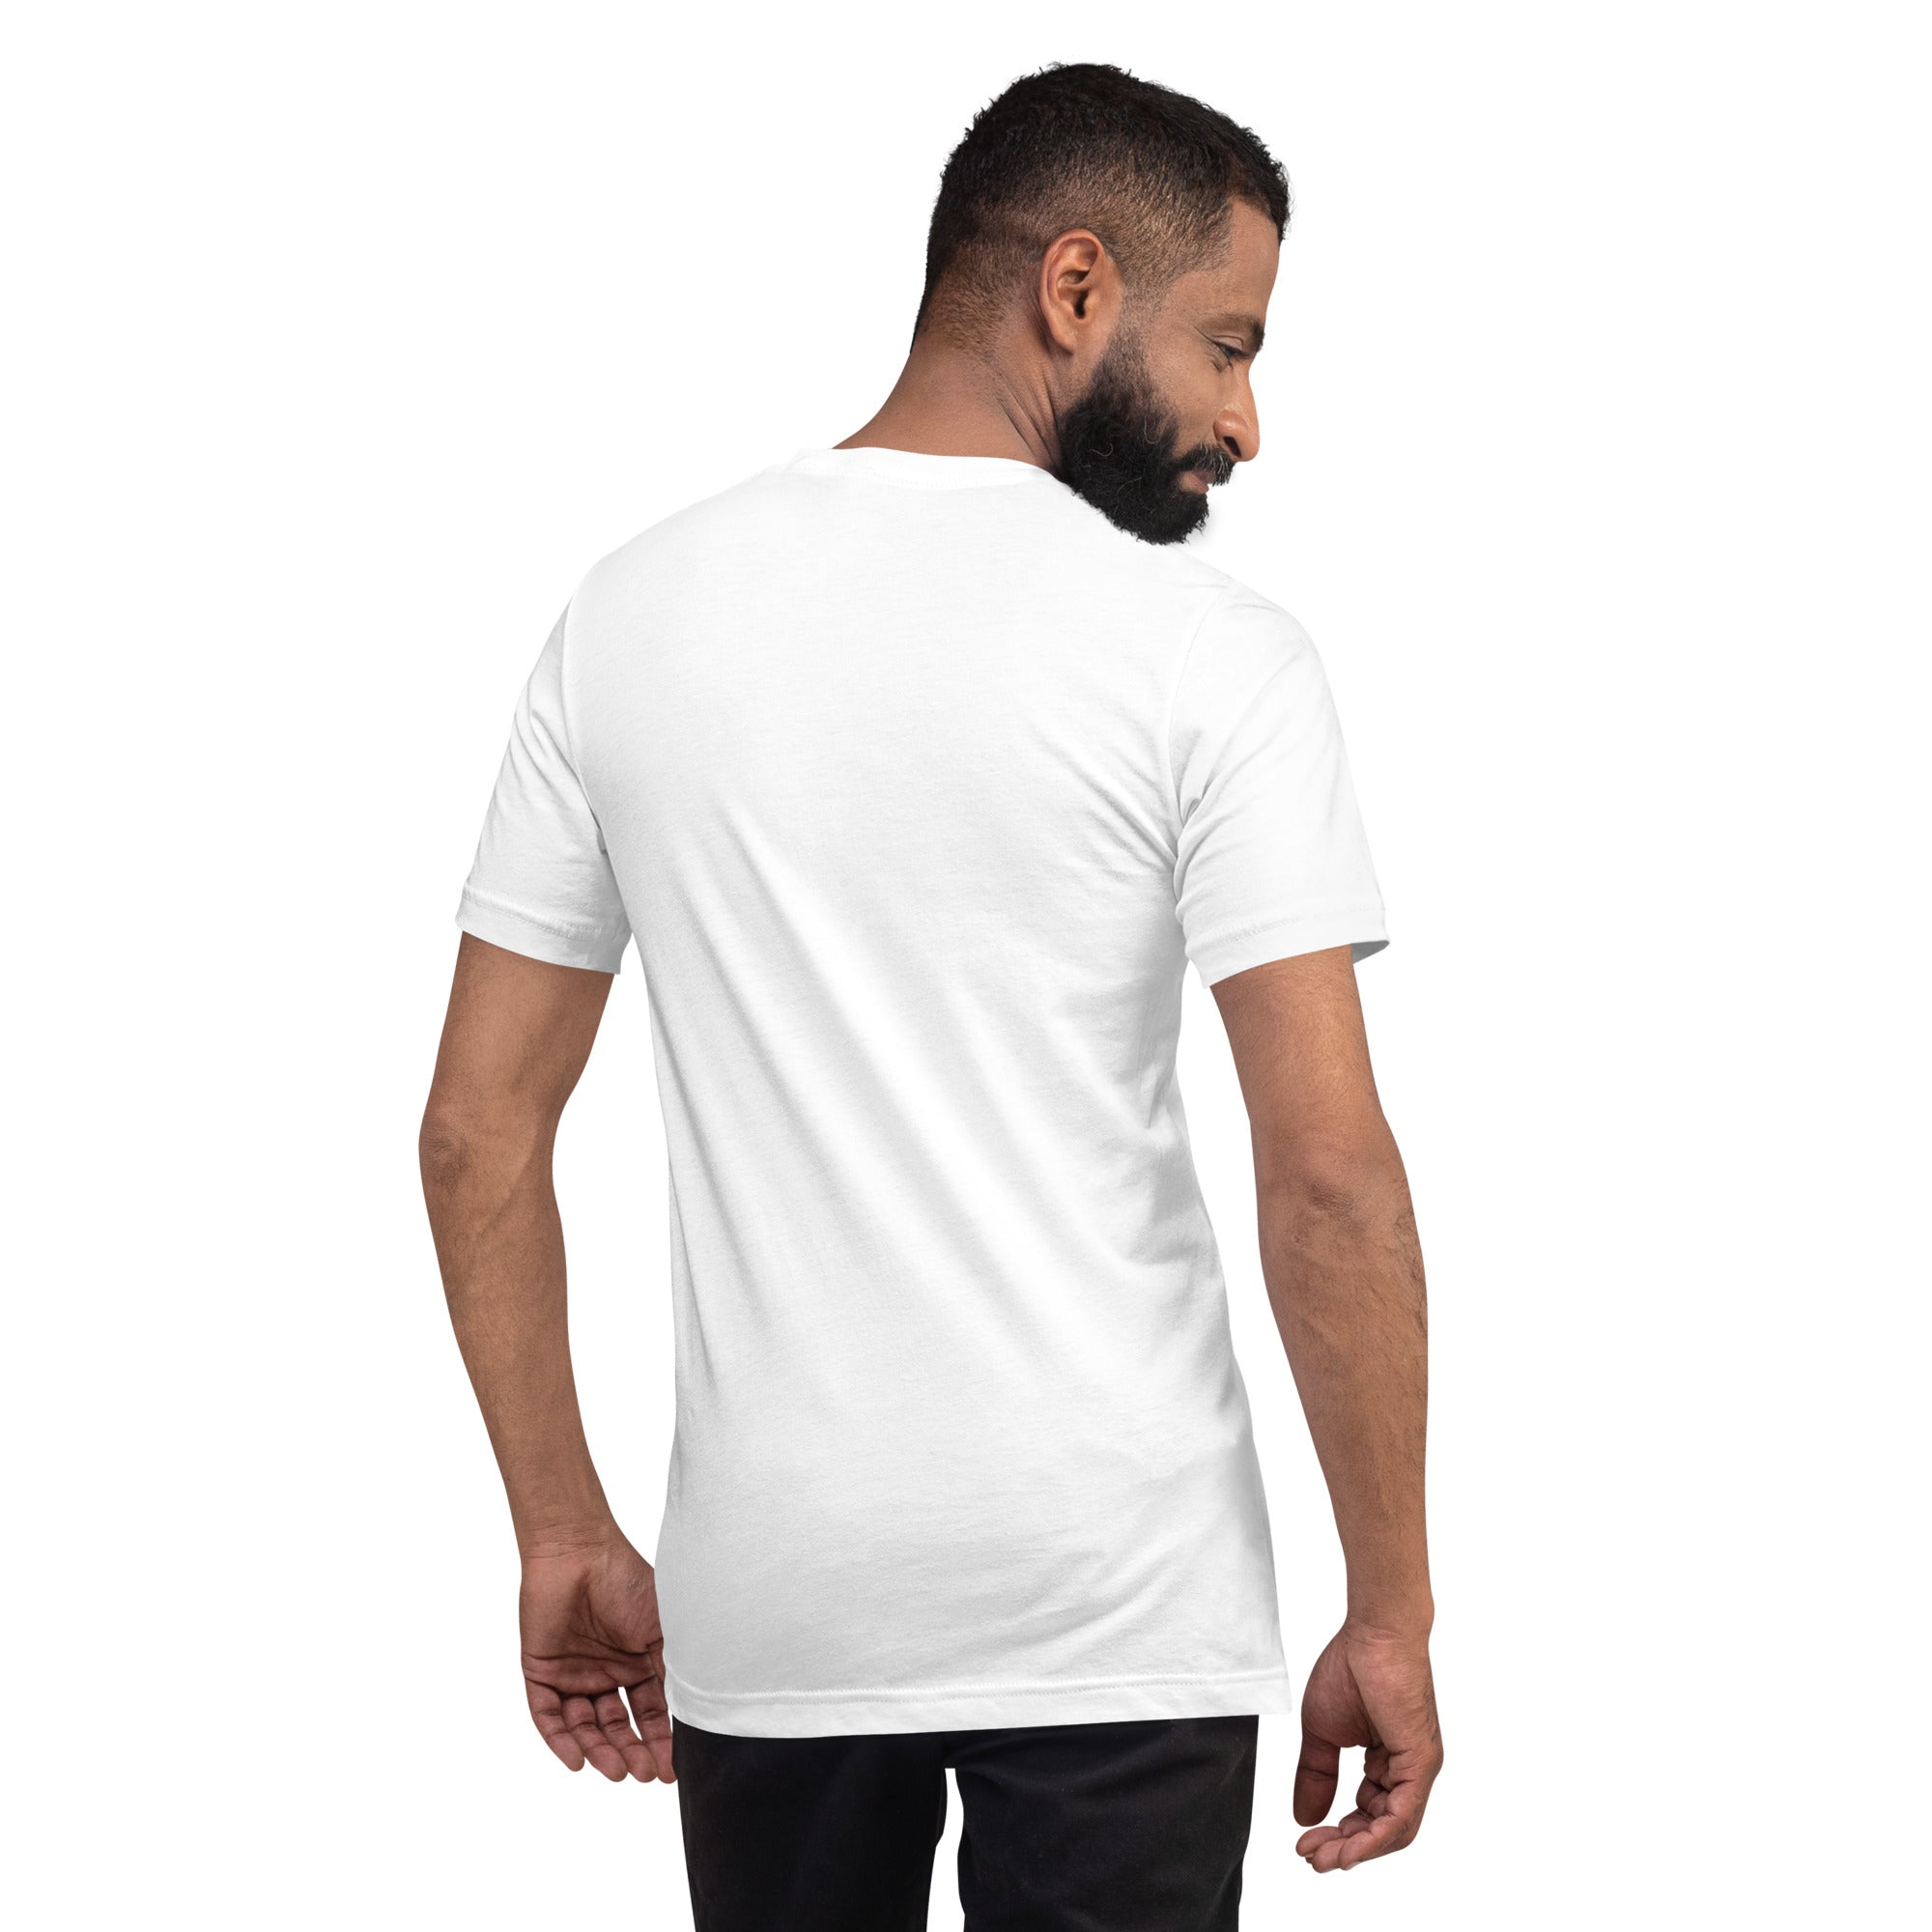 T-shirt en coton unisexe Make Bouillabaisse Not War Navy brodé sur couleurs claires